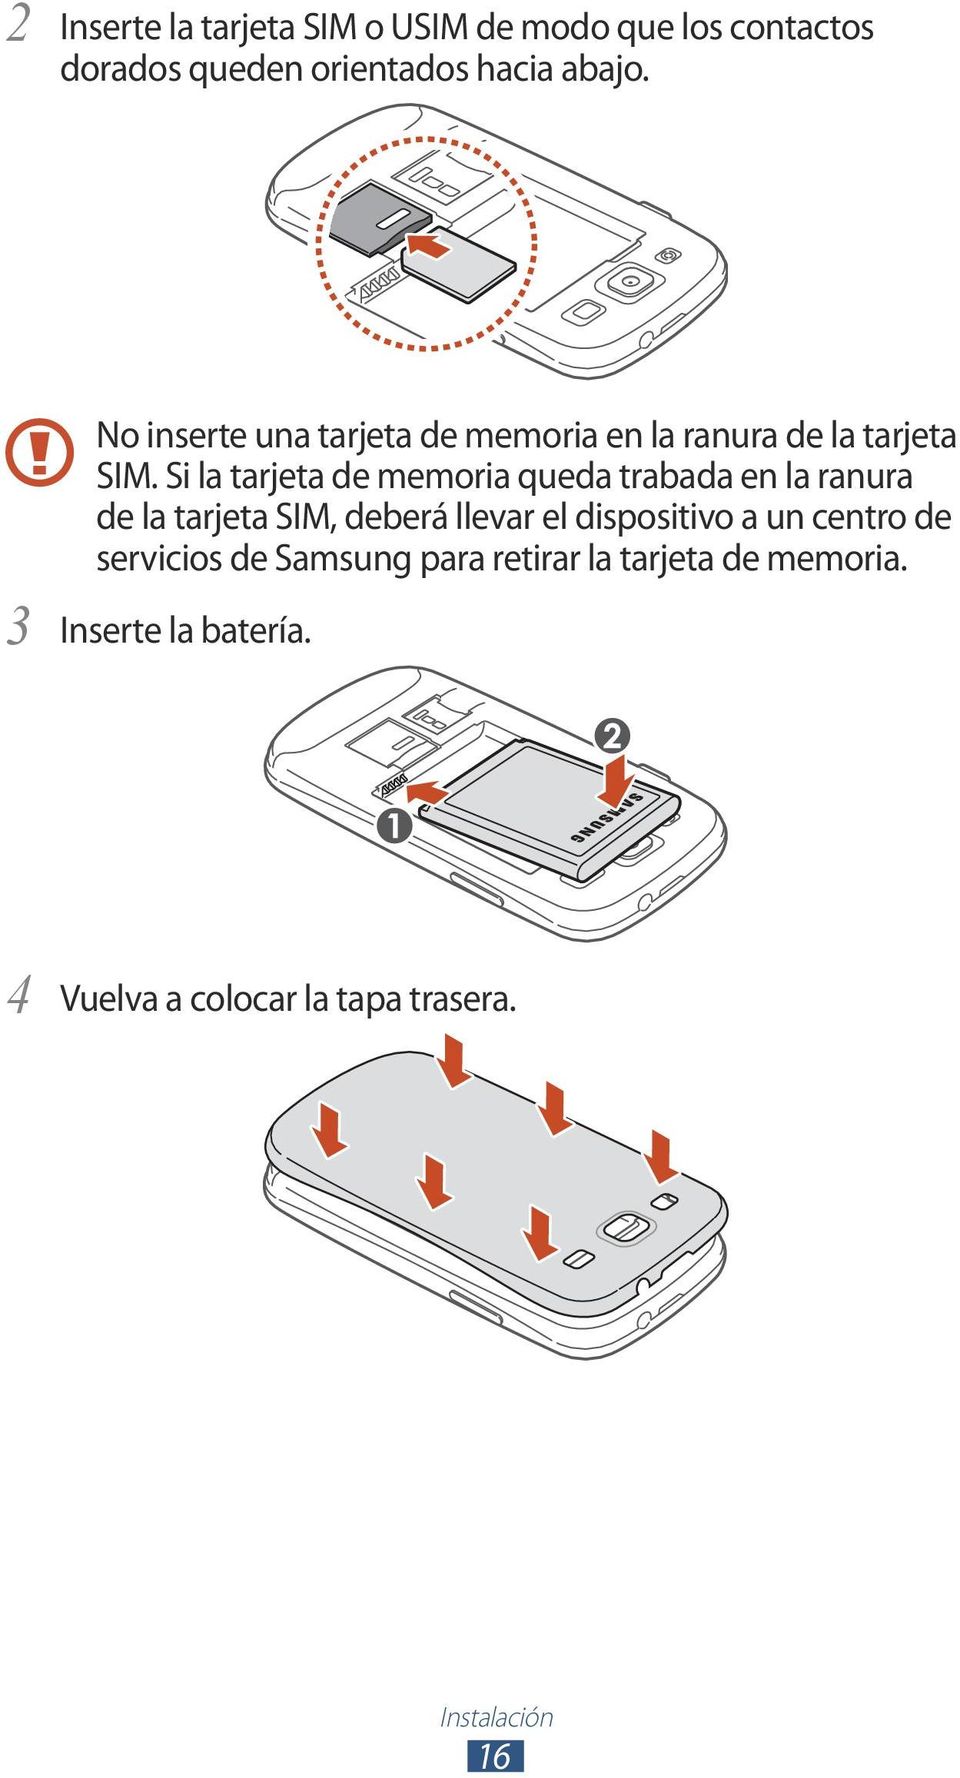 Si la tarjeta de memoria queda trabada en la ranura de la tarjeta SIM, deberá llevar el dispositivo a